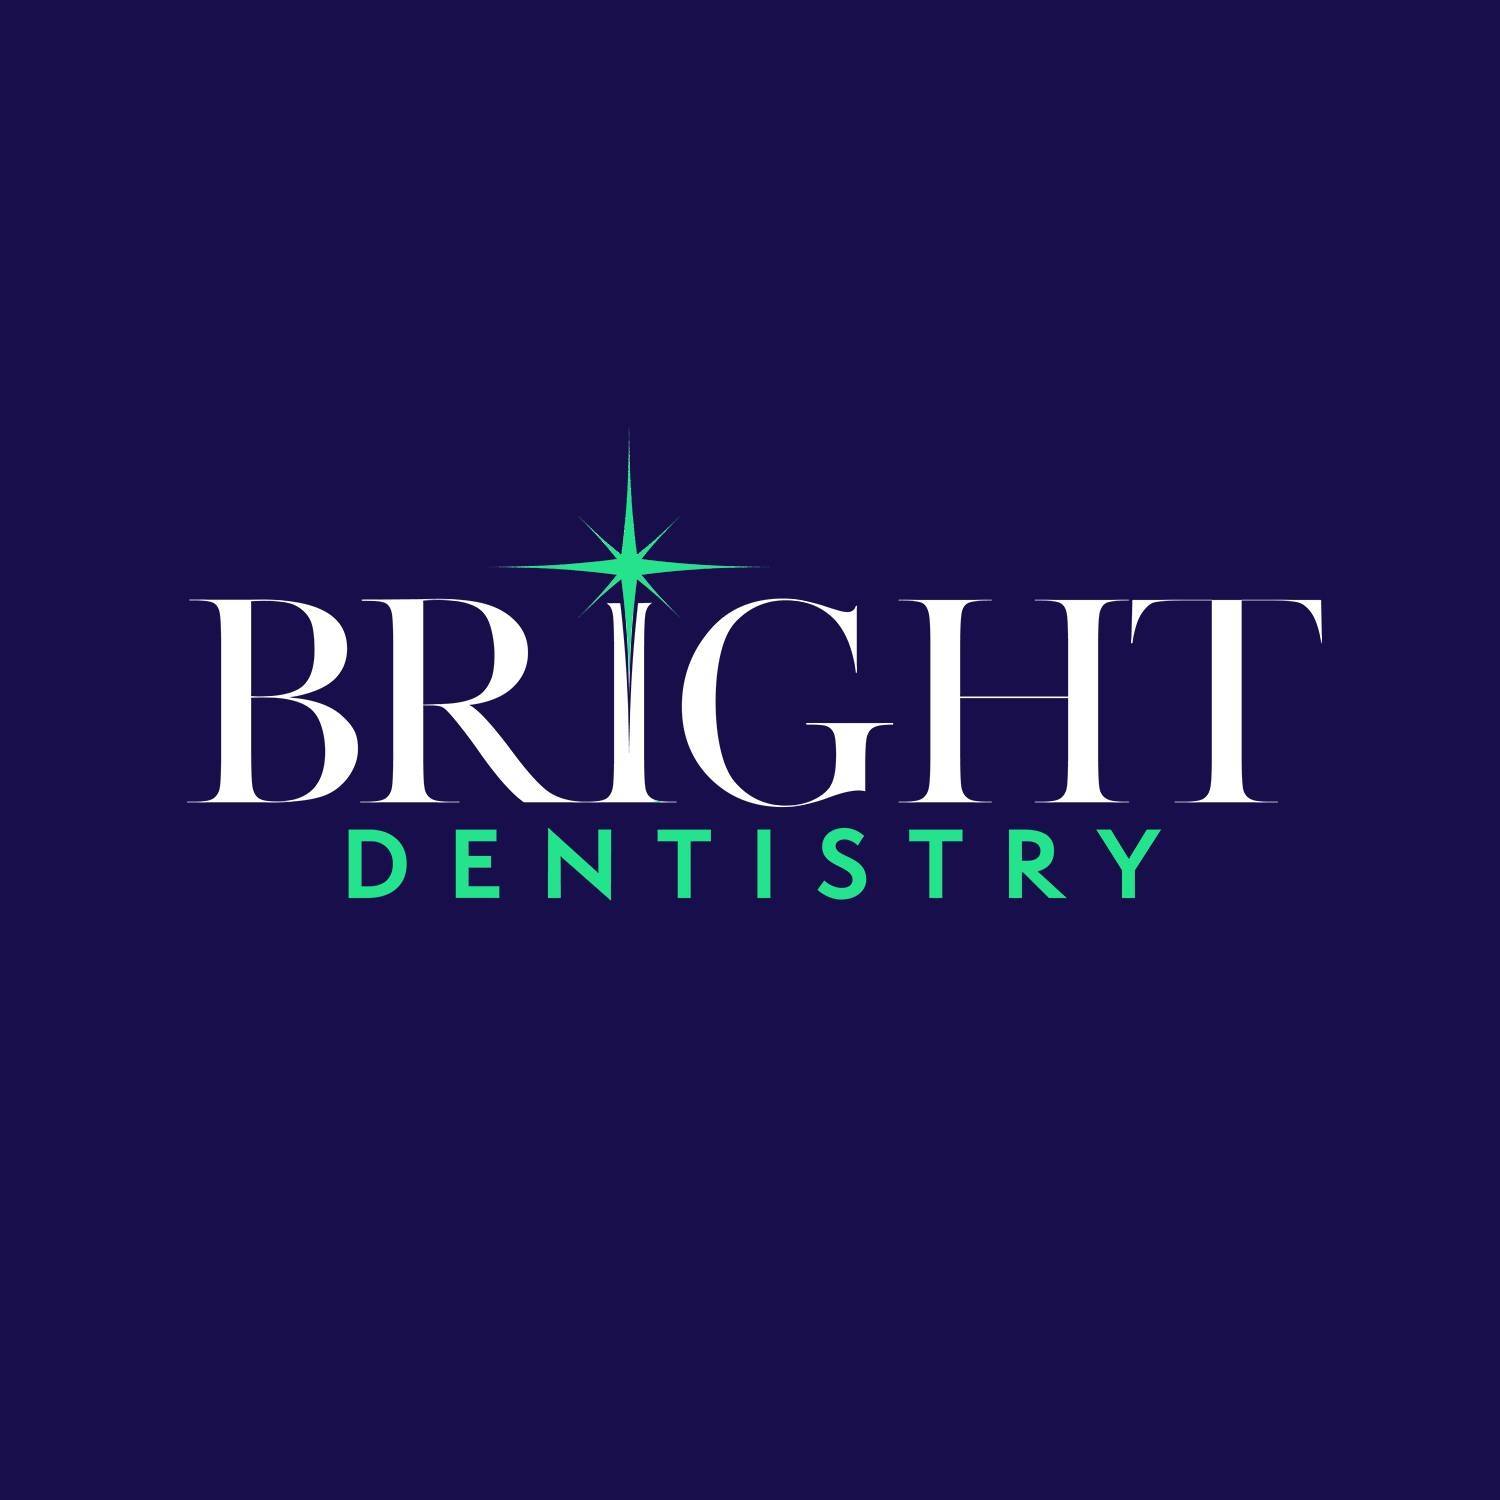 Company logo of Bright Dentistry